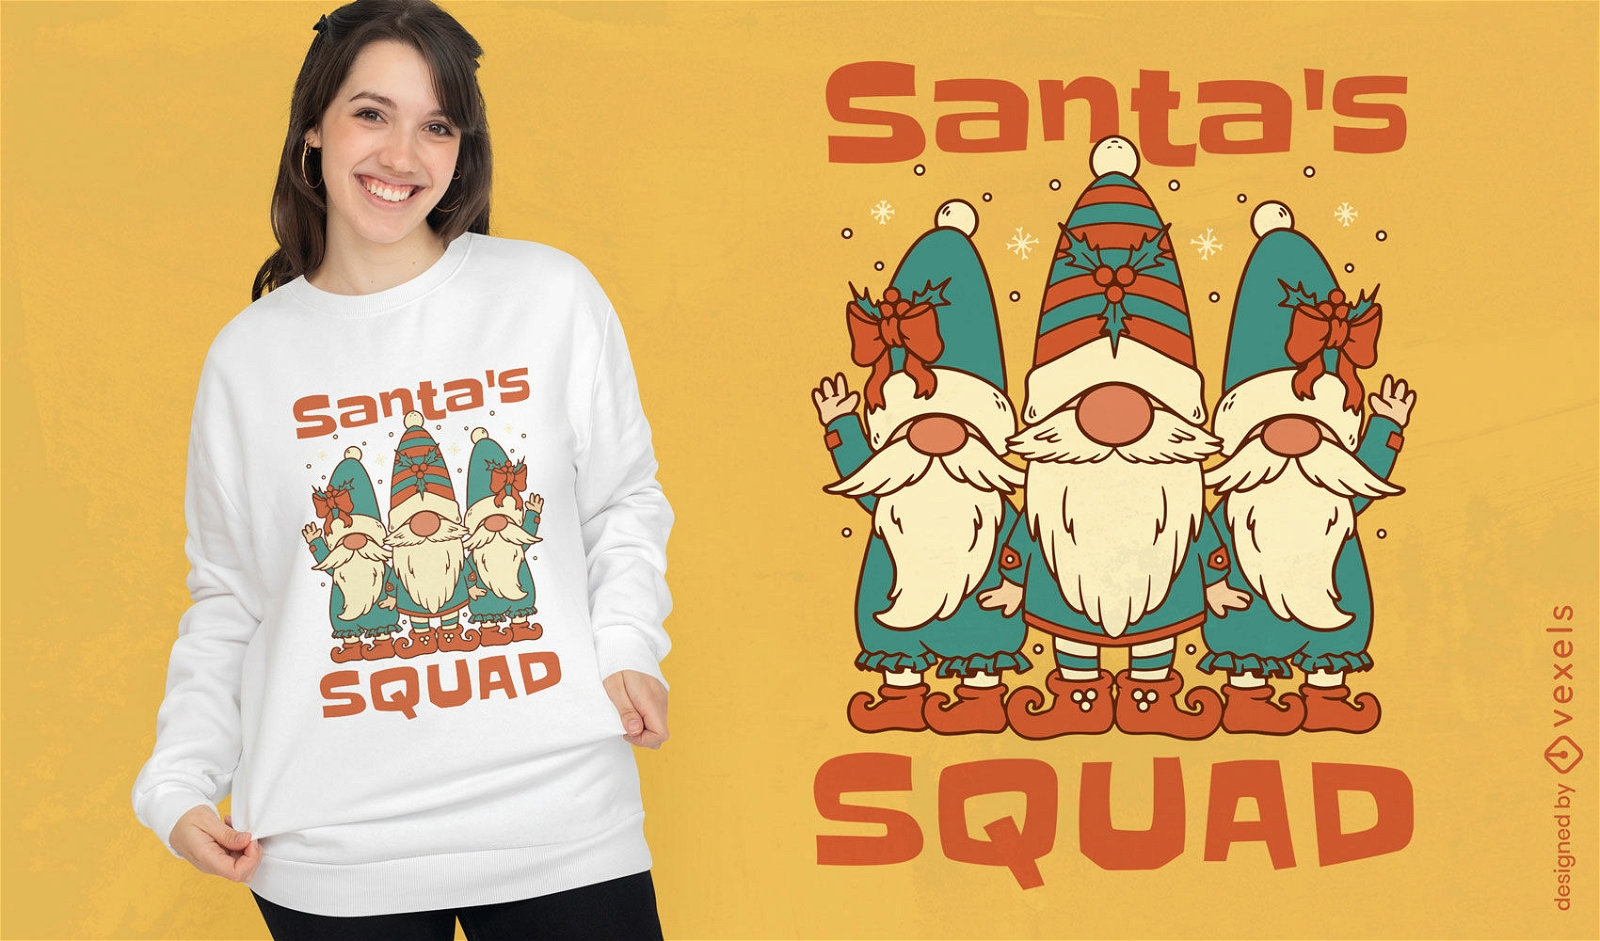 Santa claus gnome squad t-shirt design